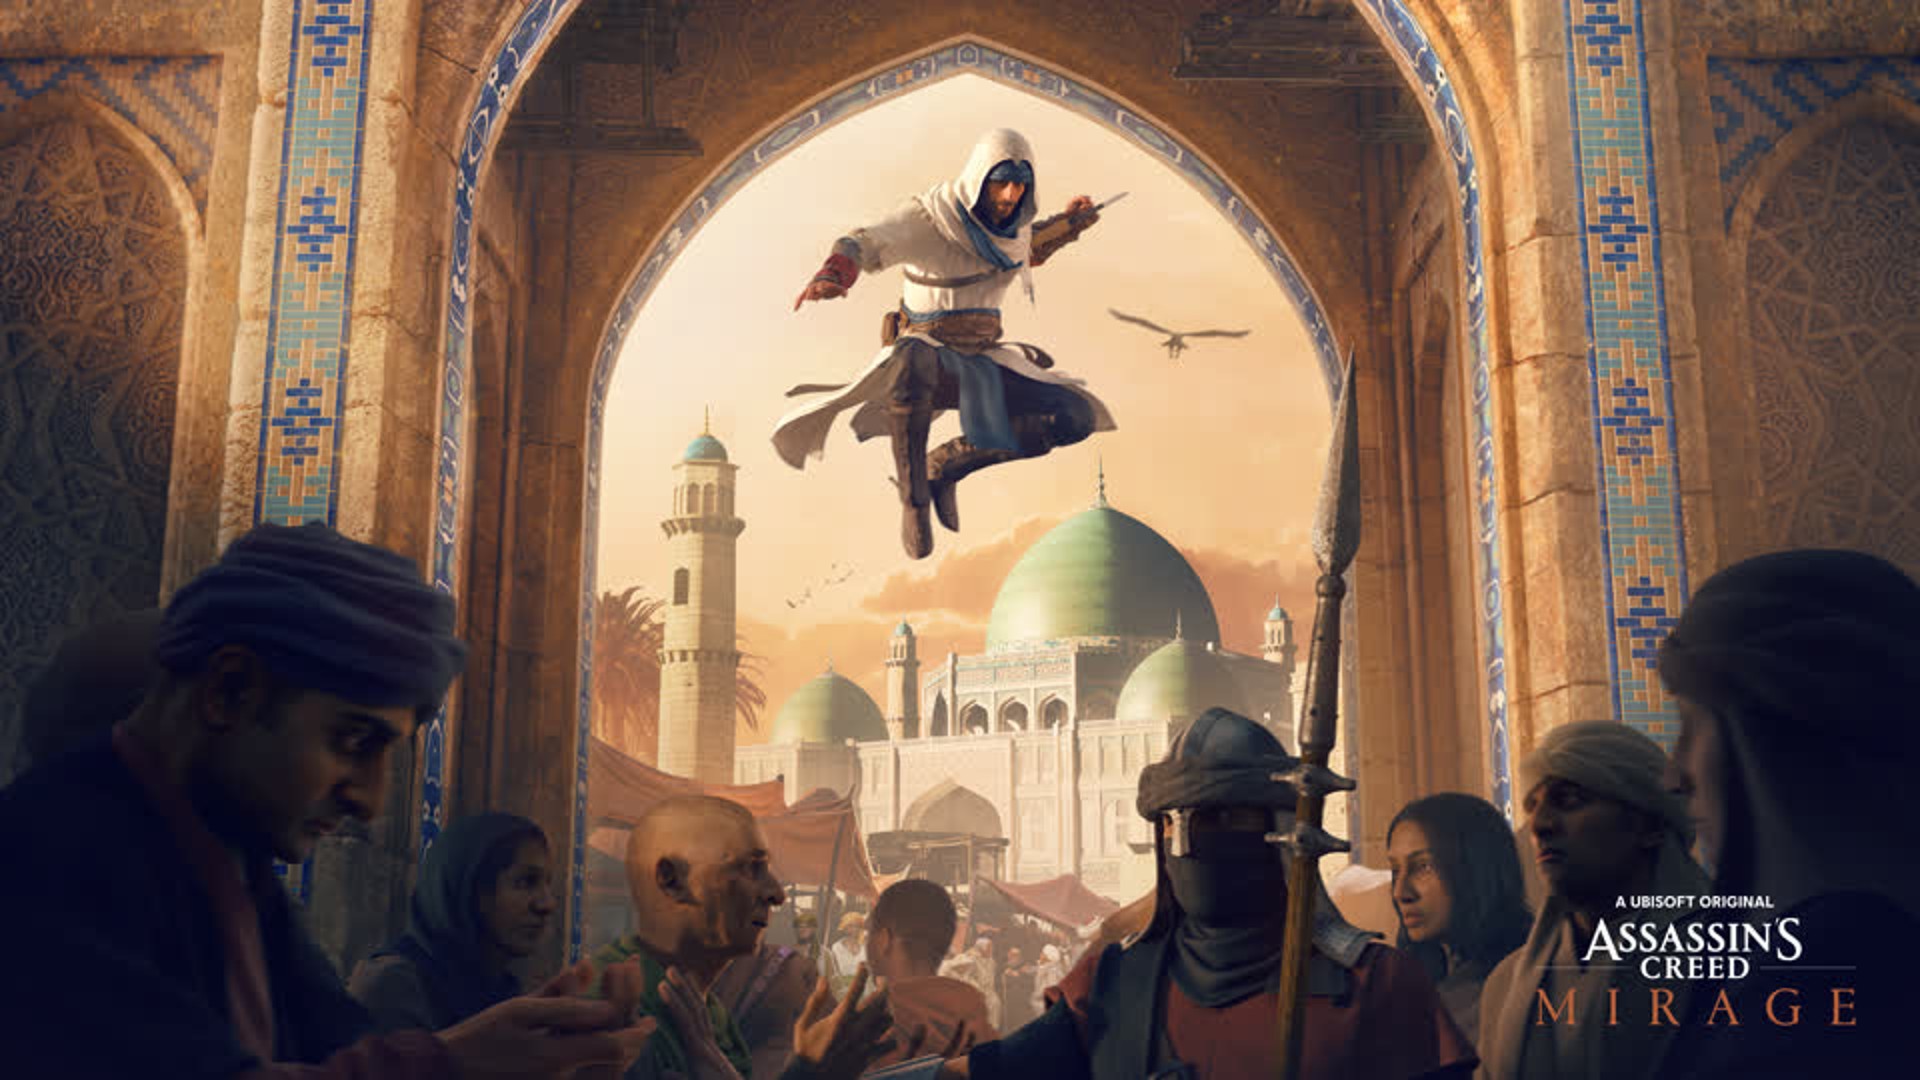 สรุปรวมข้อมูลทั้งหมดของ Assassin’s Creed จากงาน Ubisoft Forward 2022